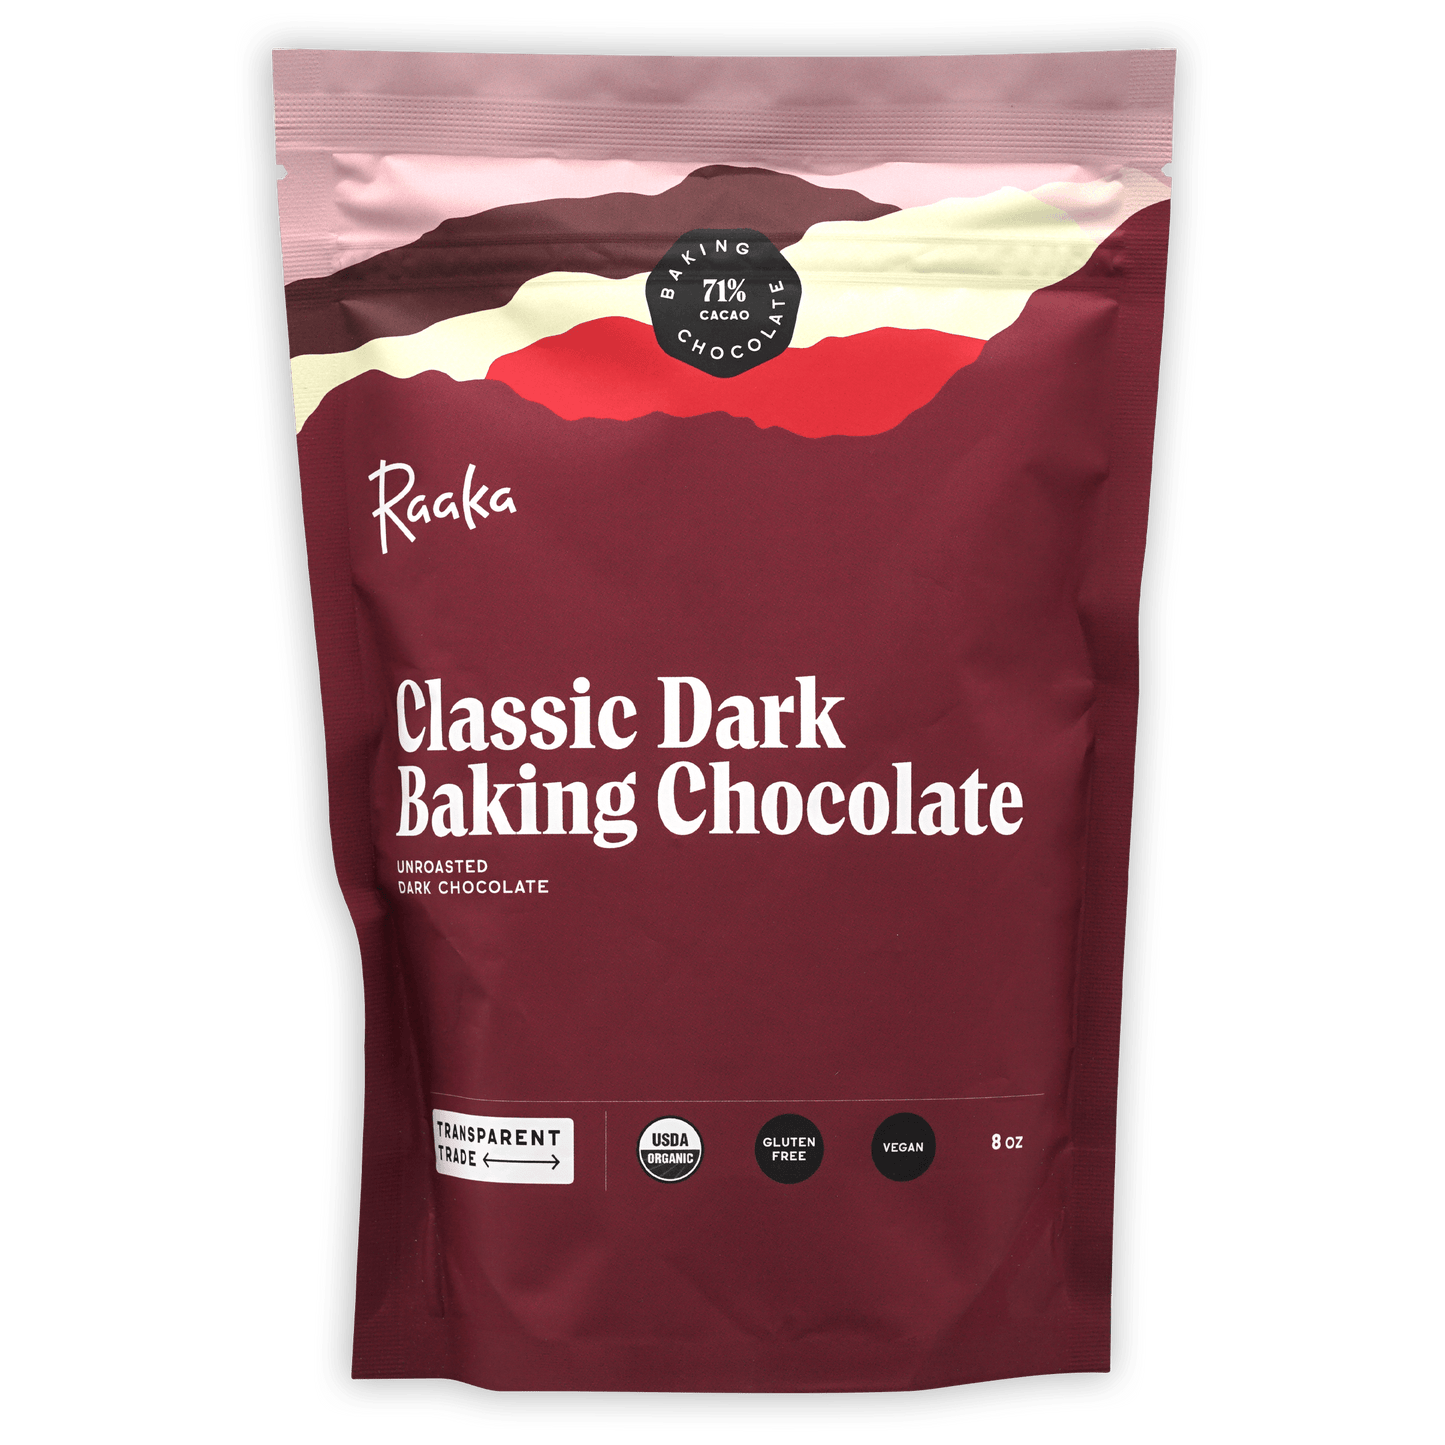 Raaka Baking Chocolate Classic Dark 71%